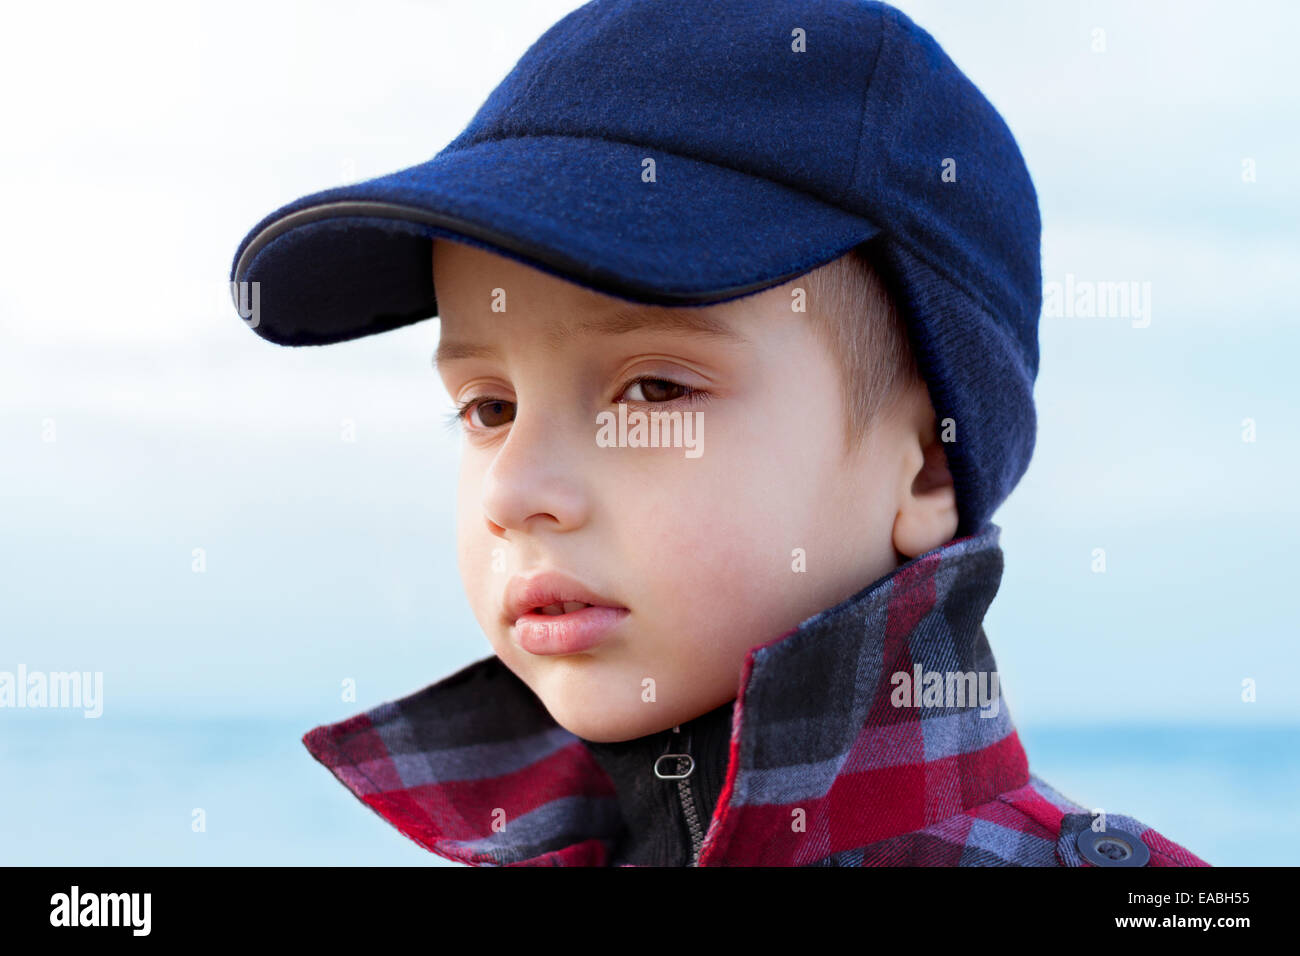 Bambino boy close up ritratto di moda collare risvoltato all'aperto Foto Stock